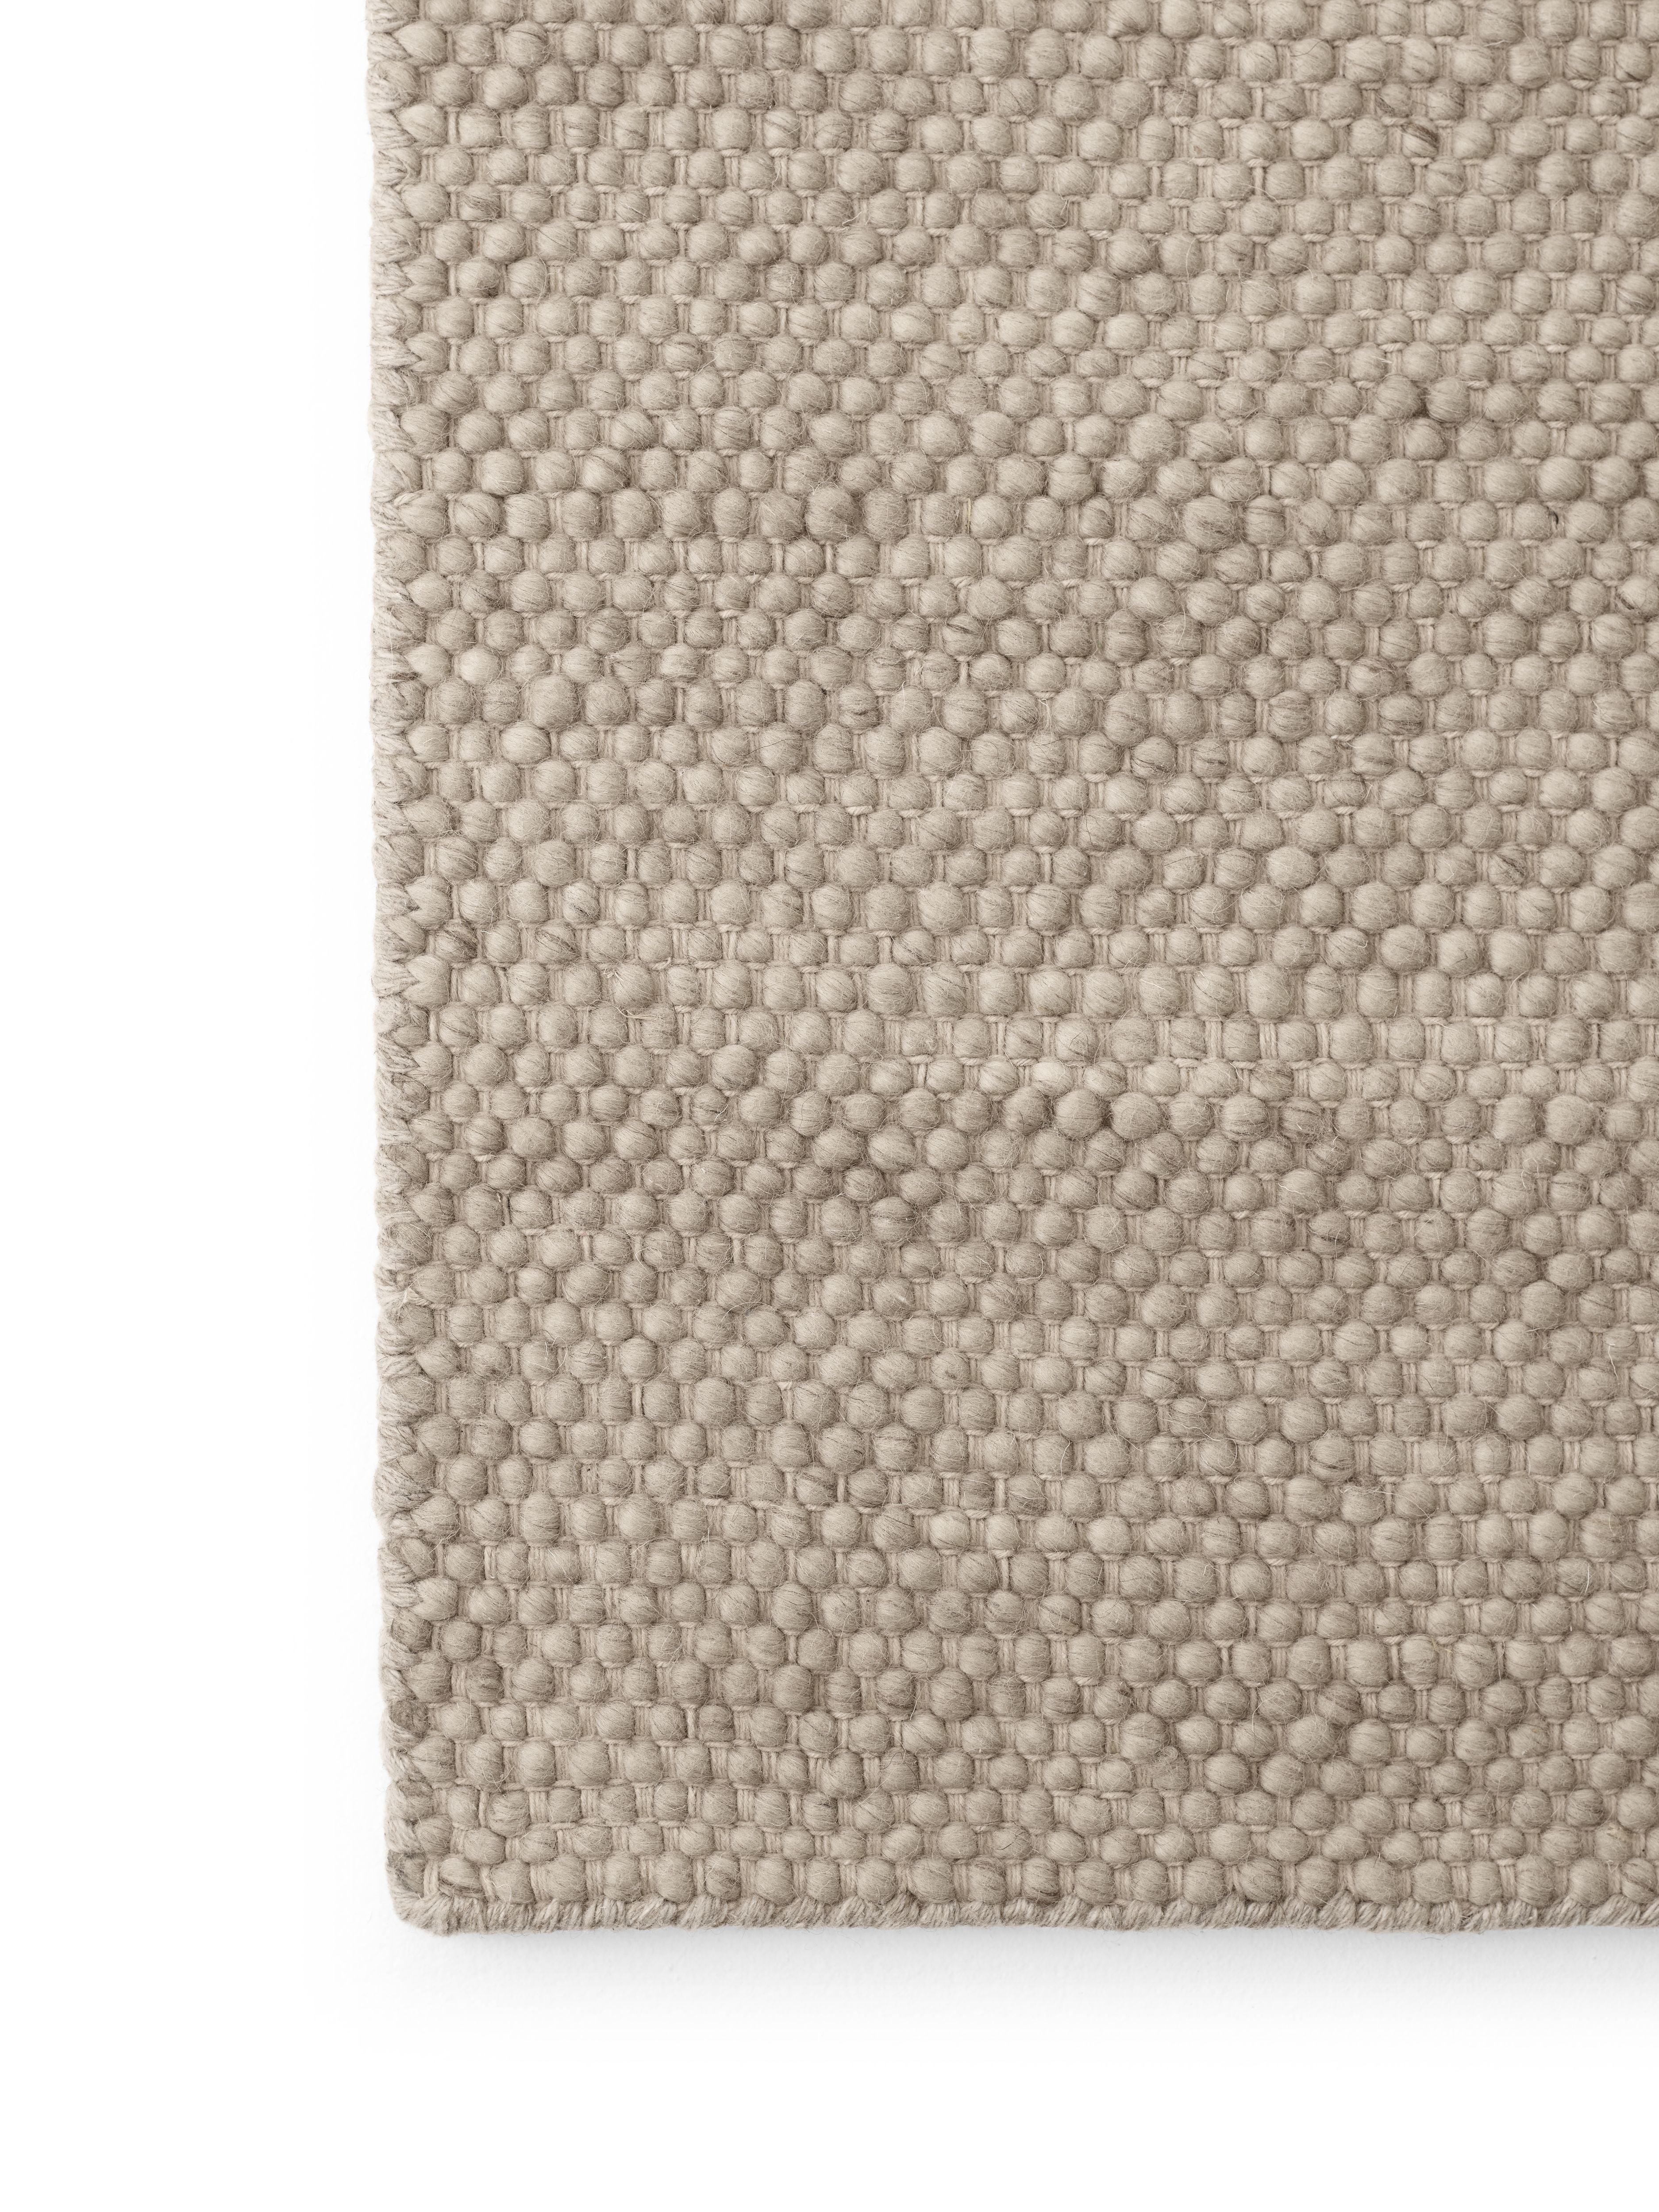 Vipp147 Wool Rug, 400x300 Cm, Dark Beige